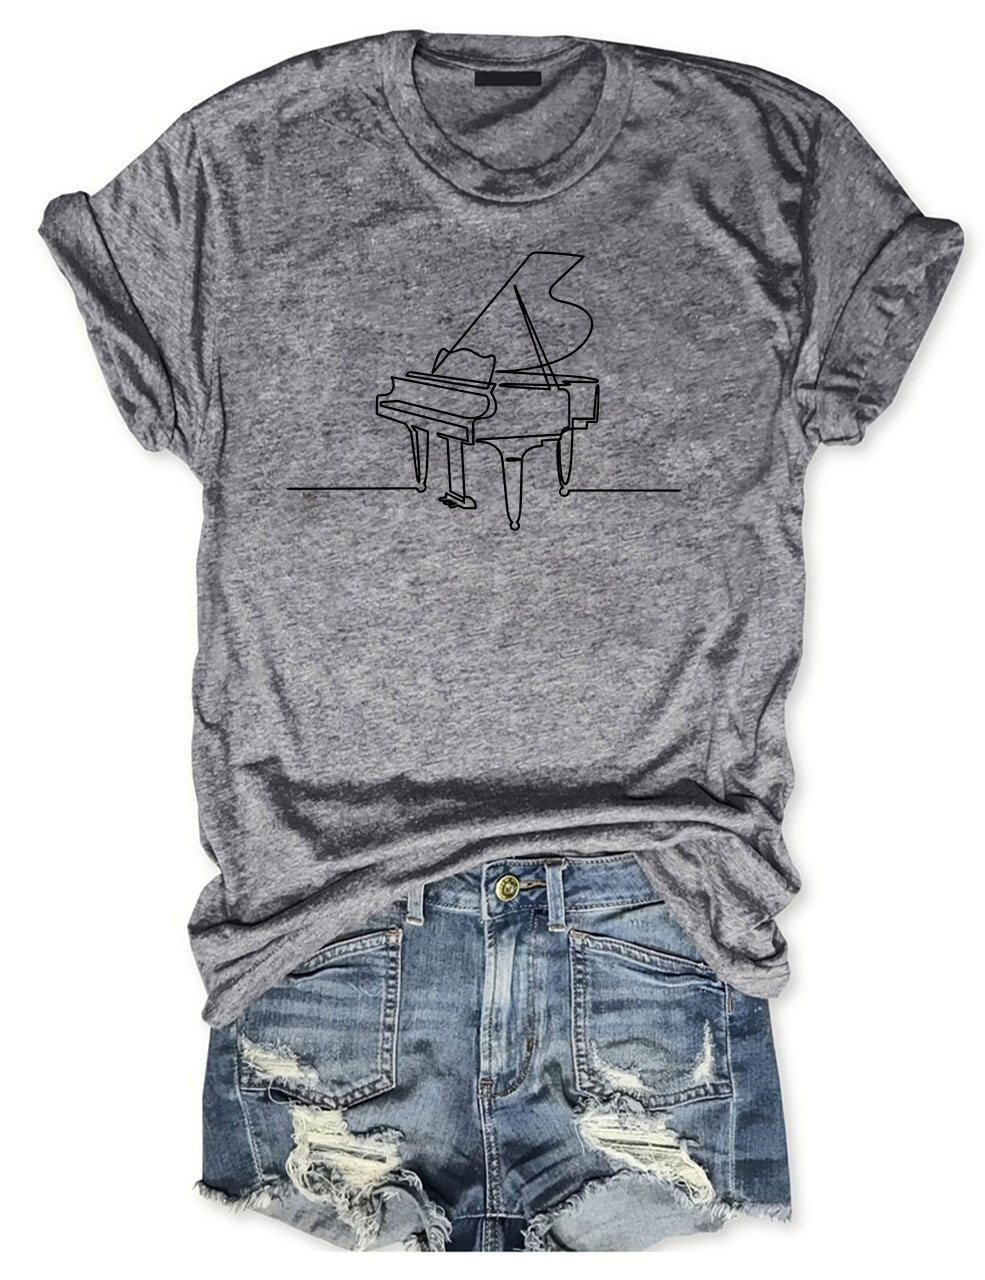 Piano T-shirt